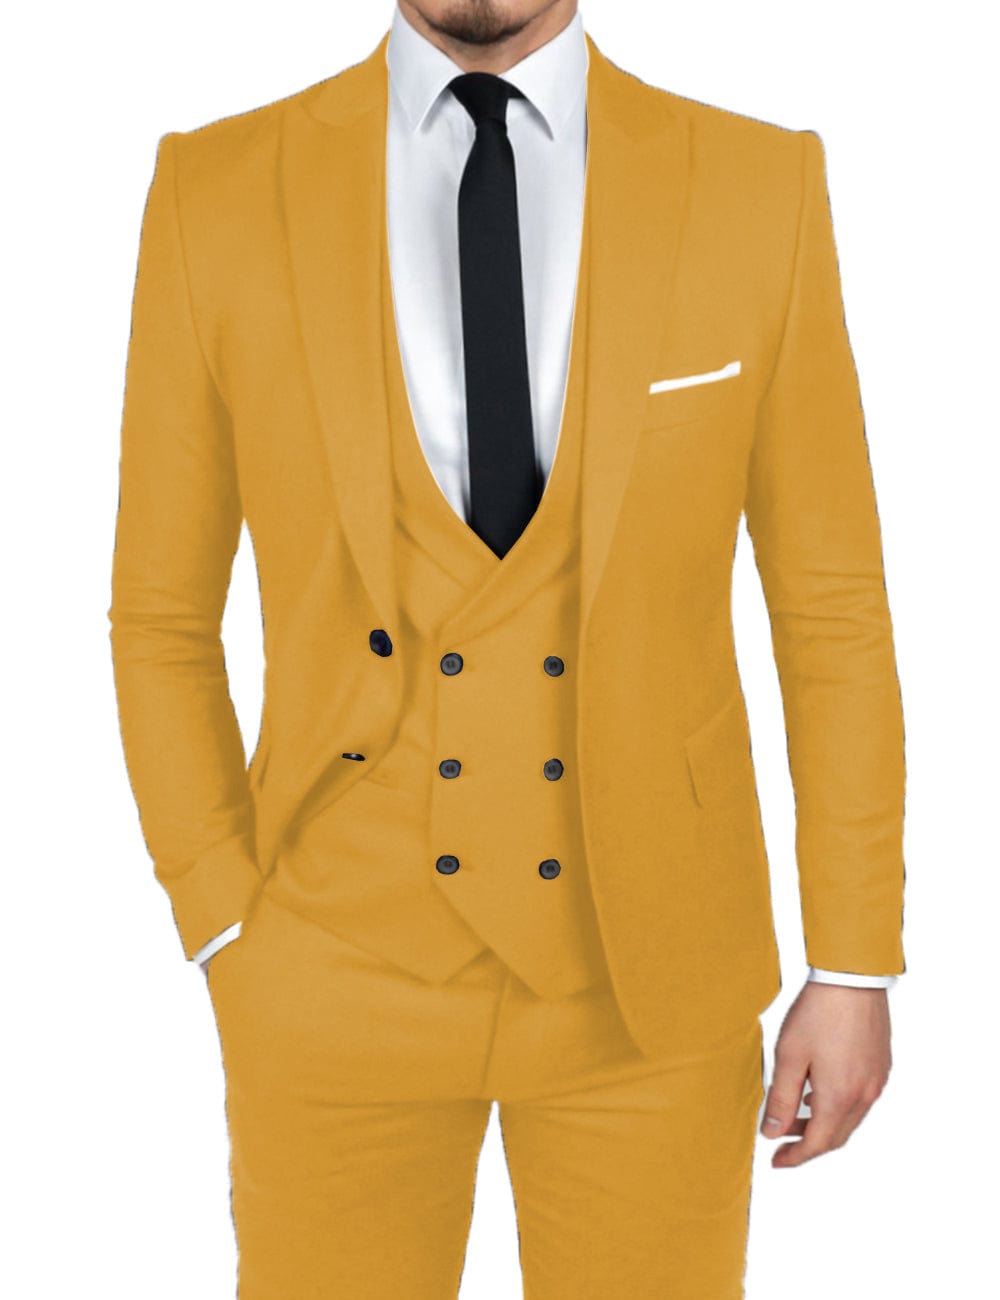 Statement Men's 100% Wool 3 Piece Suit - Cashmere Blend